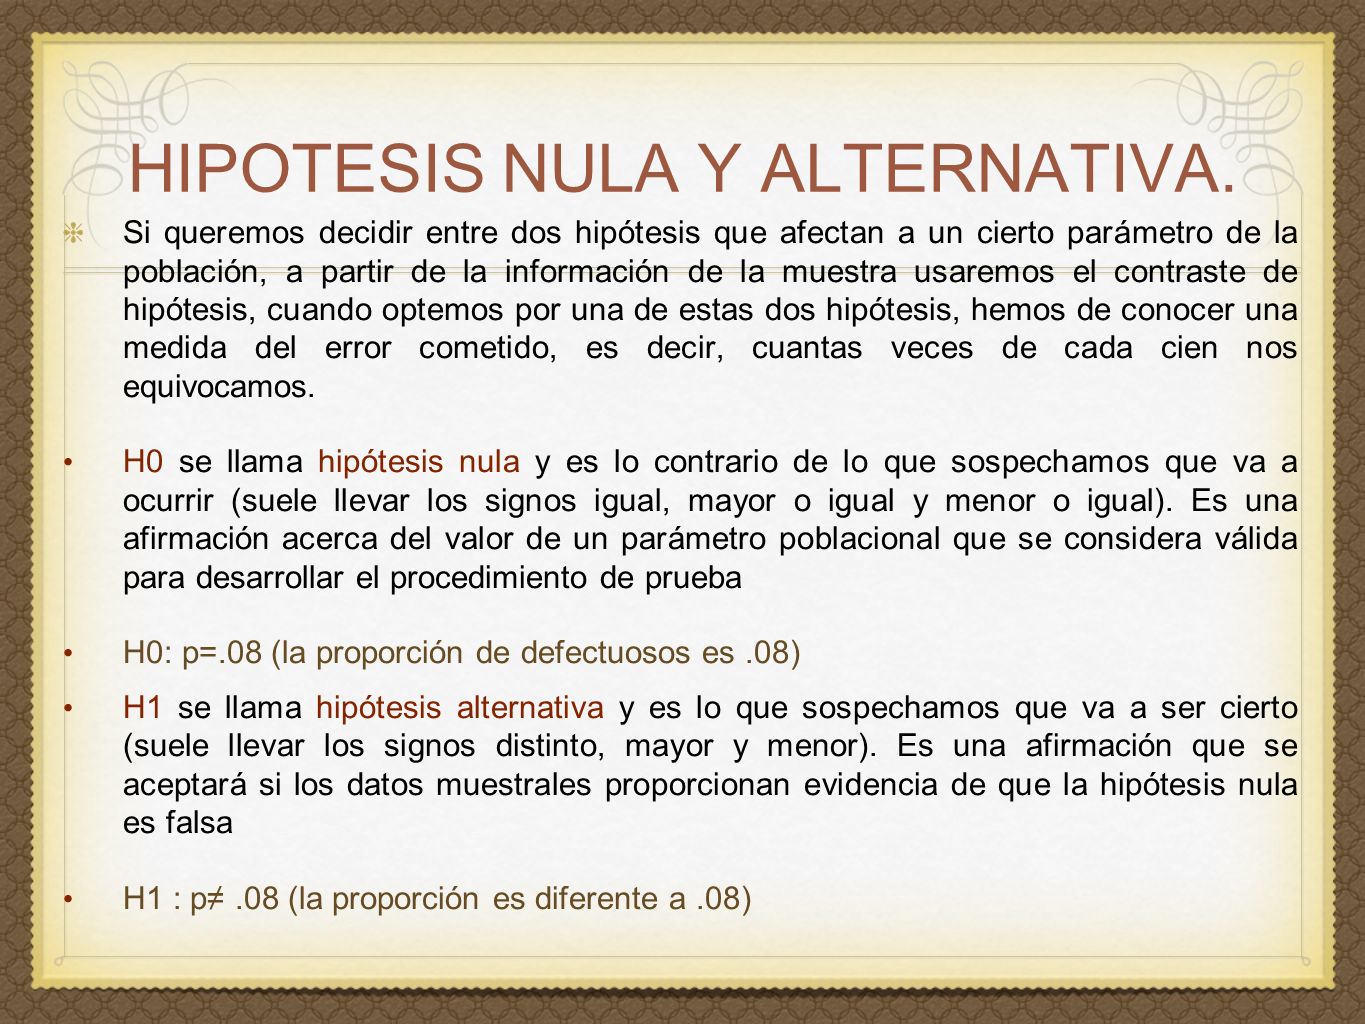 HIPOTESIS NULA Y ALTERNATIVA.